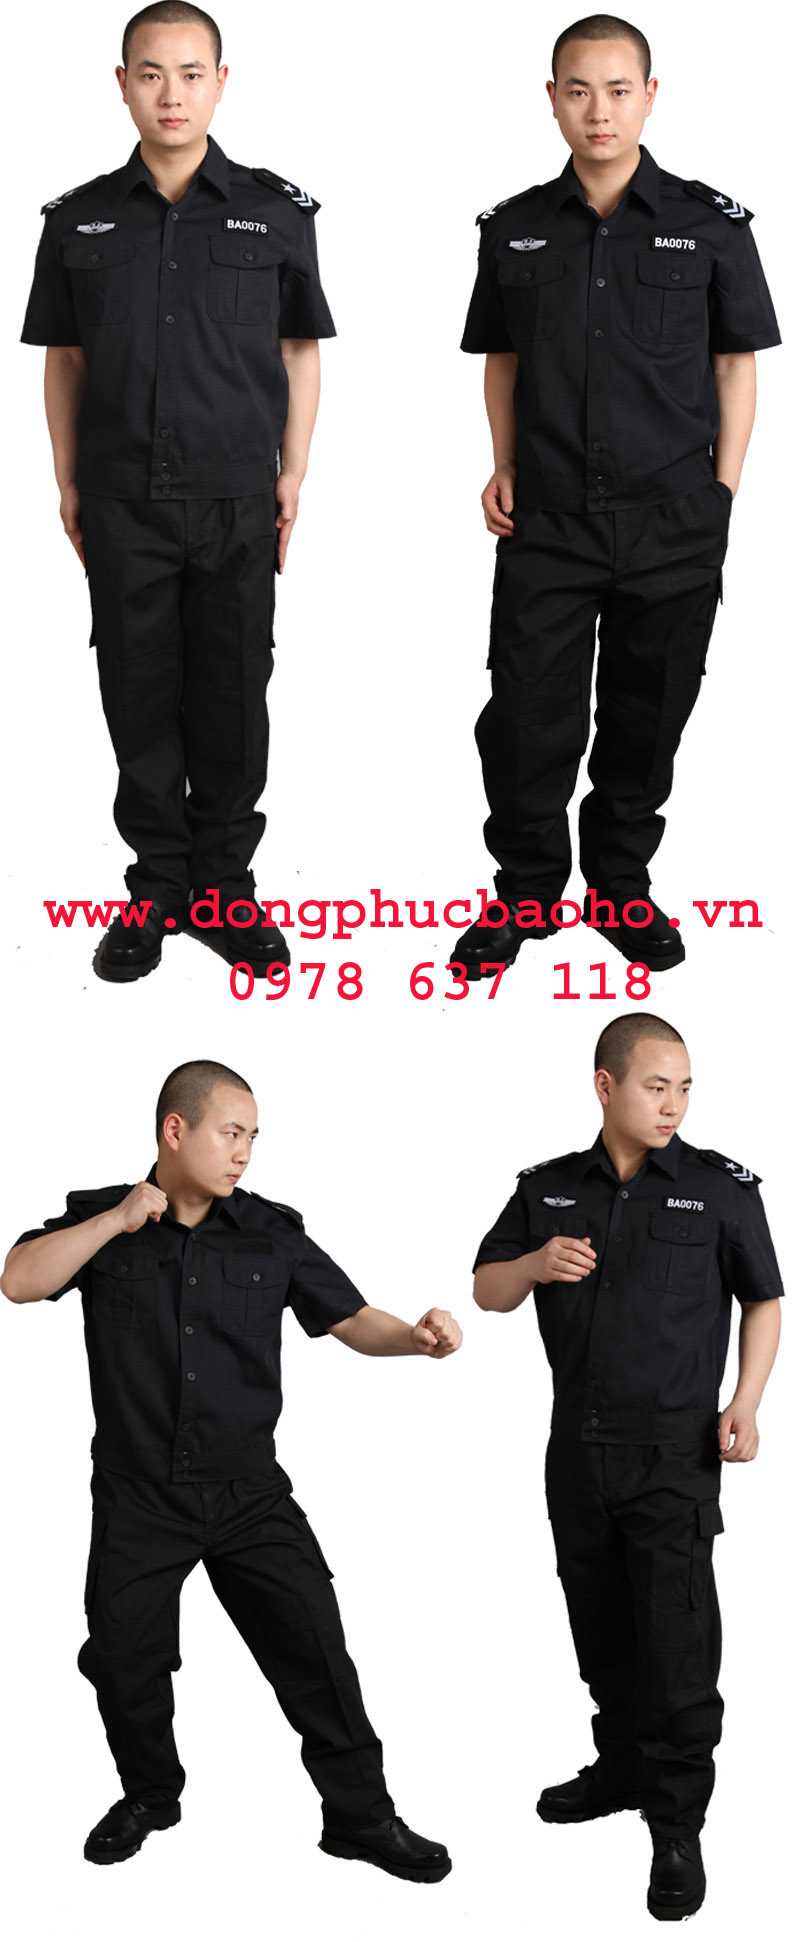 Đồng phục bảo vệ | Dong phuc bao ve